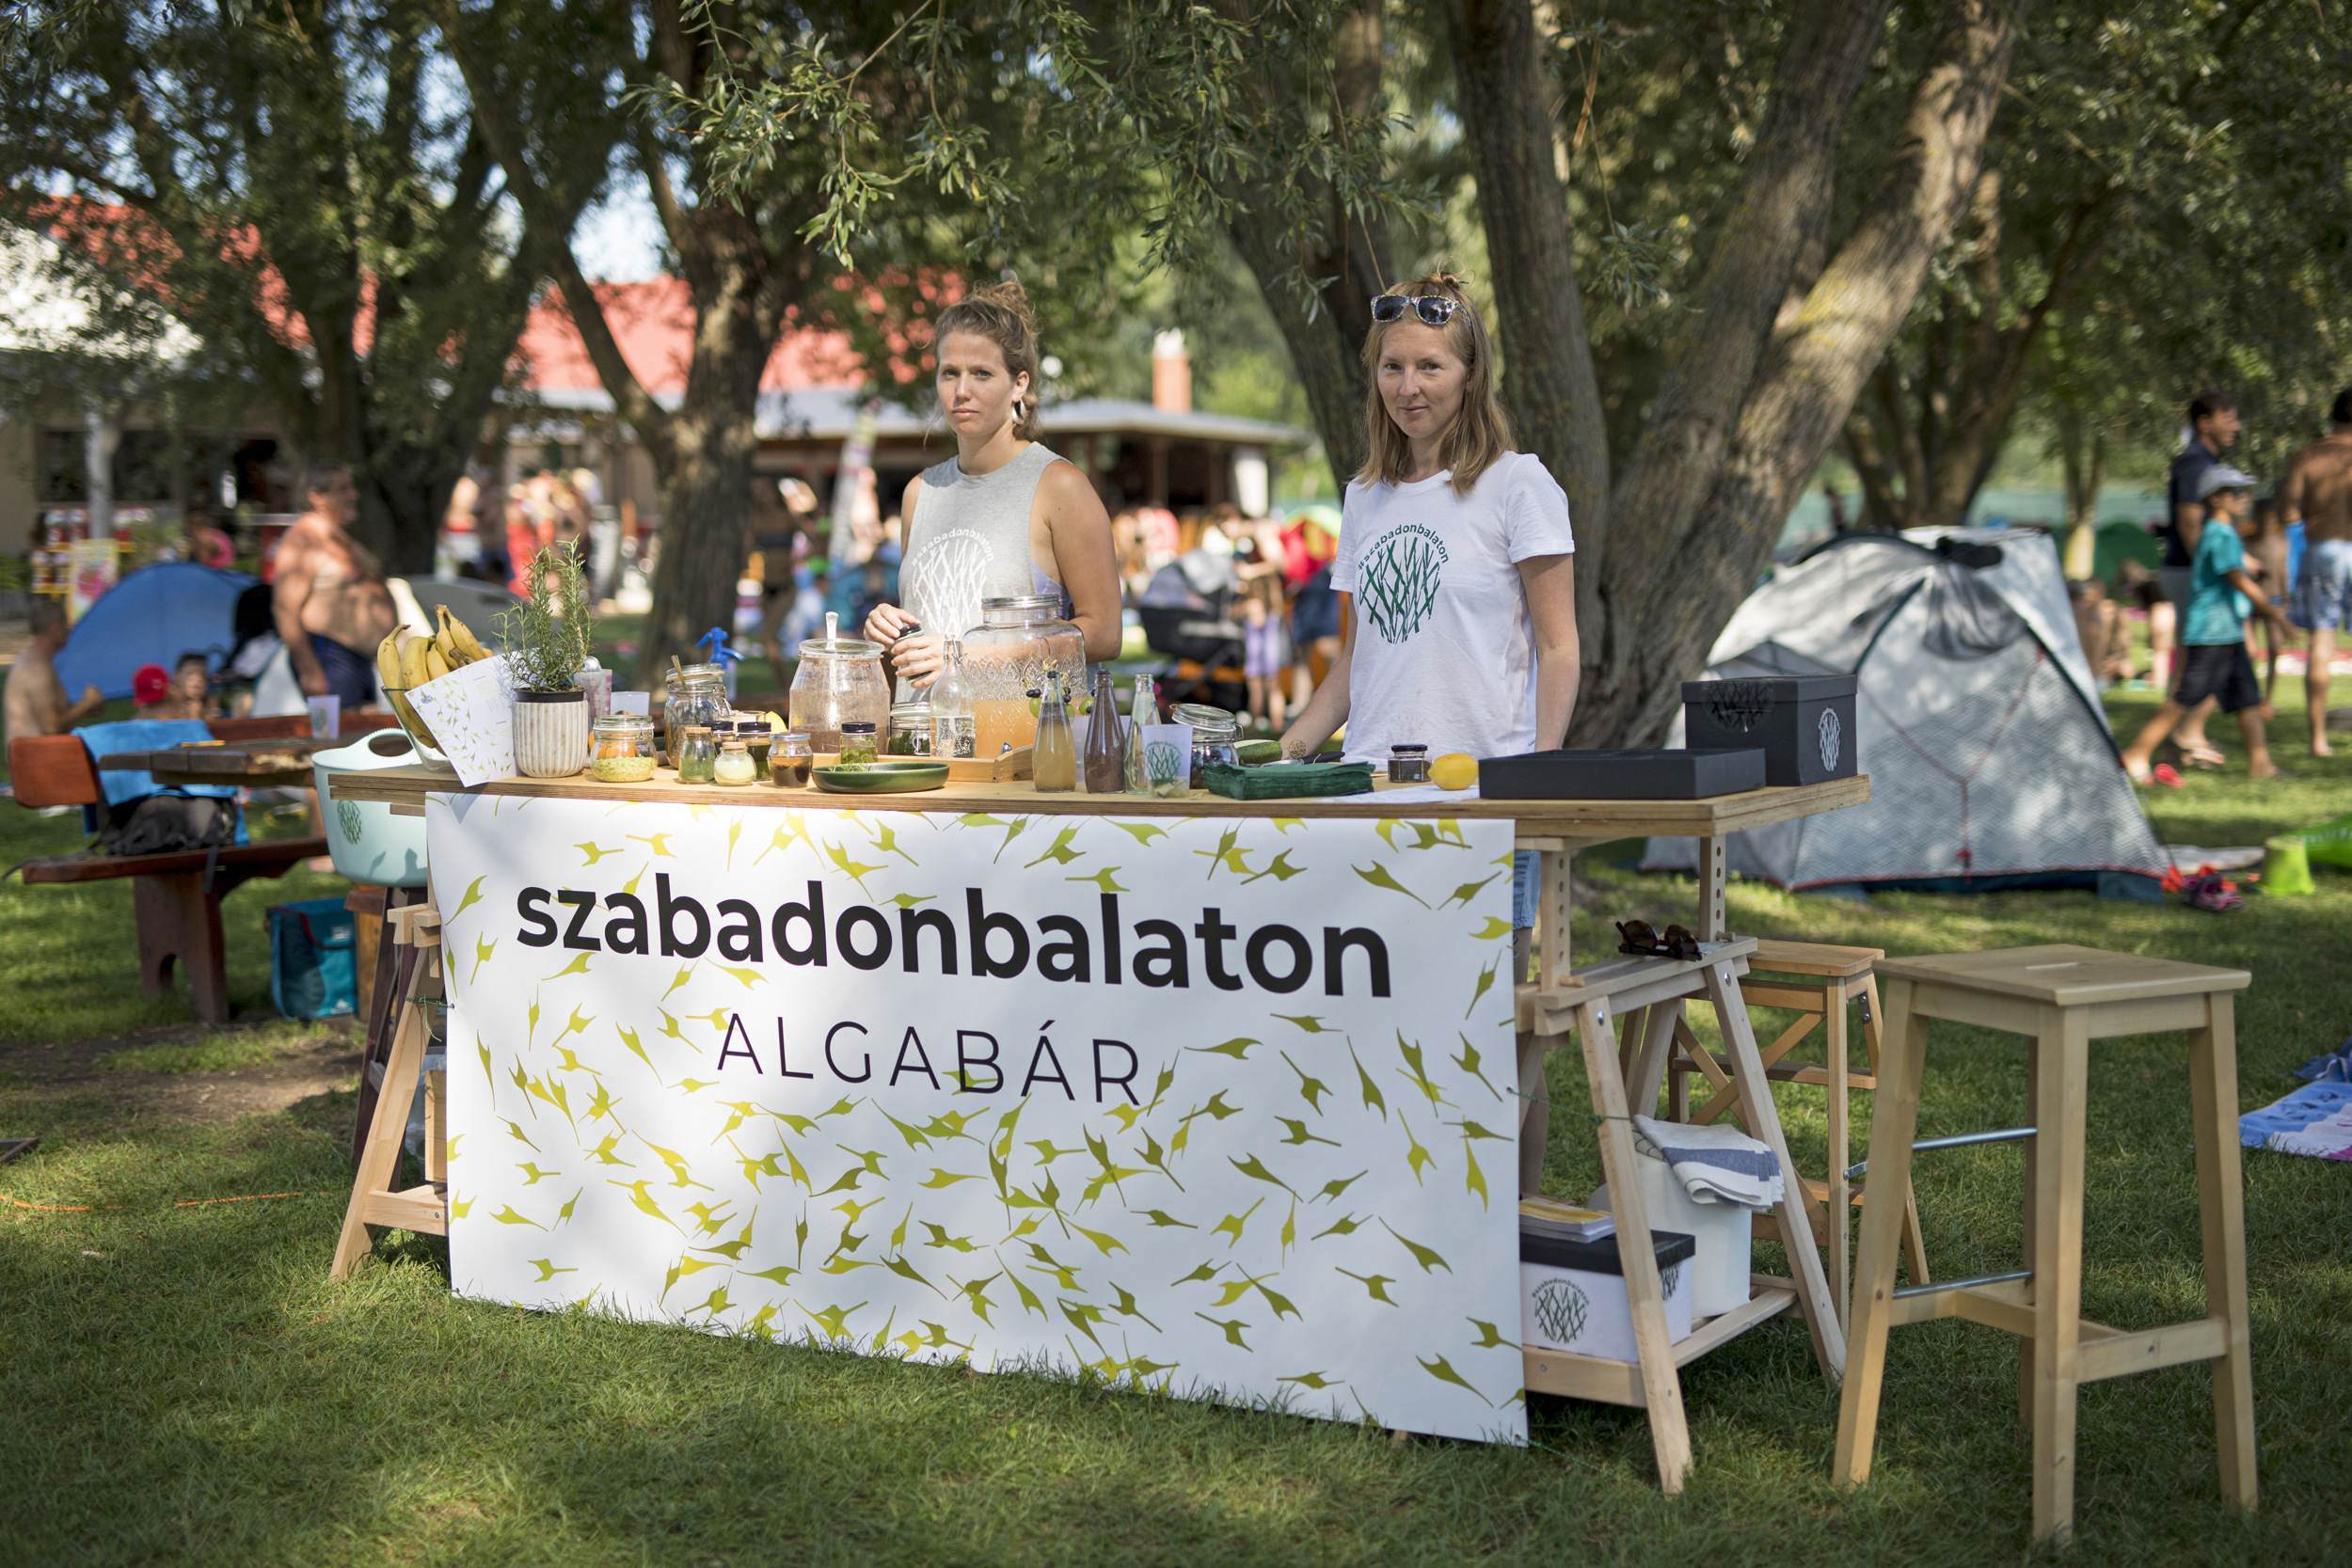 Iszapkoktél és algafröccs – Kreatív strandakcióval hívják fel a figyelmet a Balaton ökológiájára